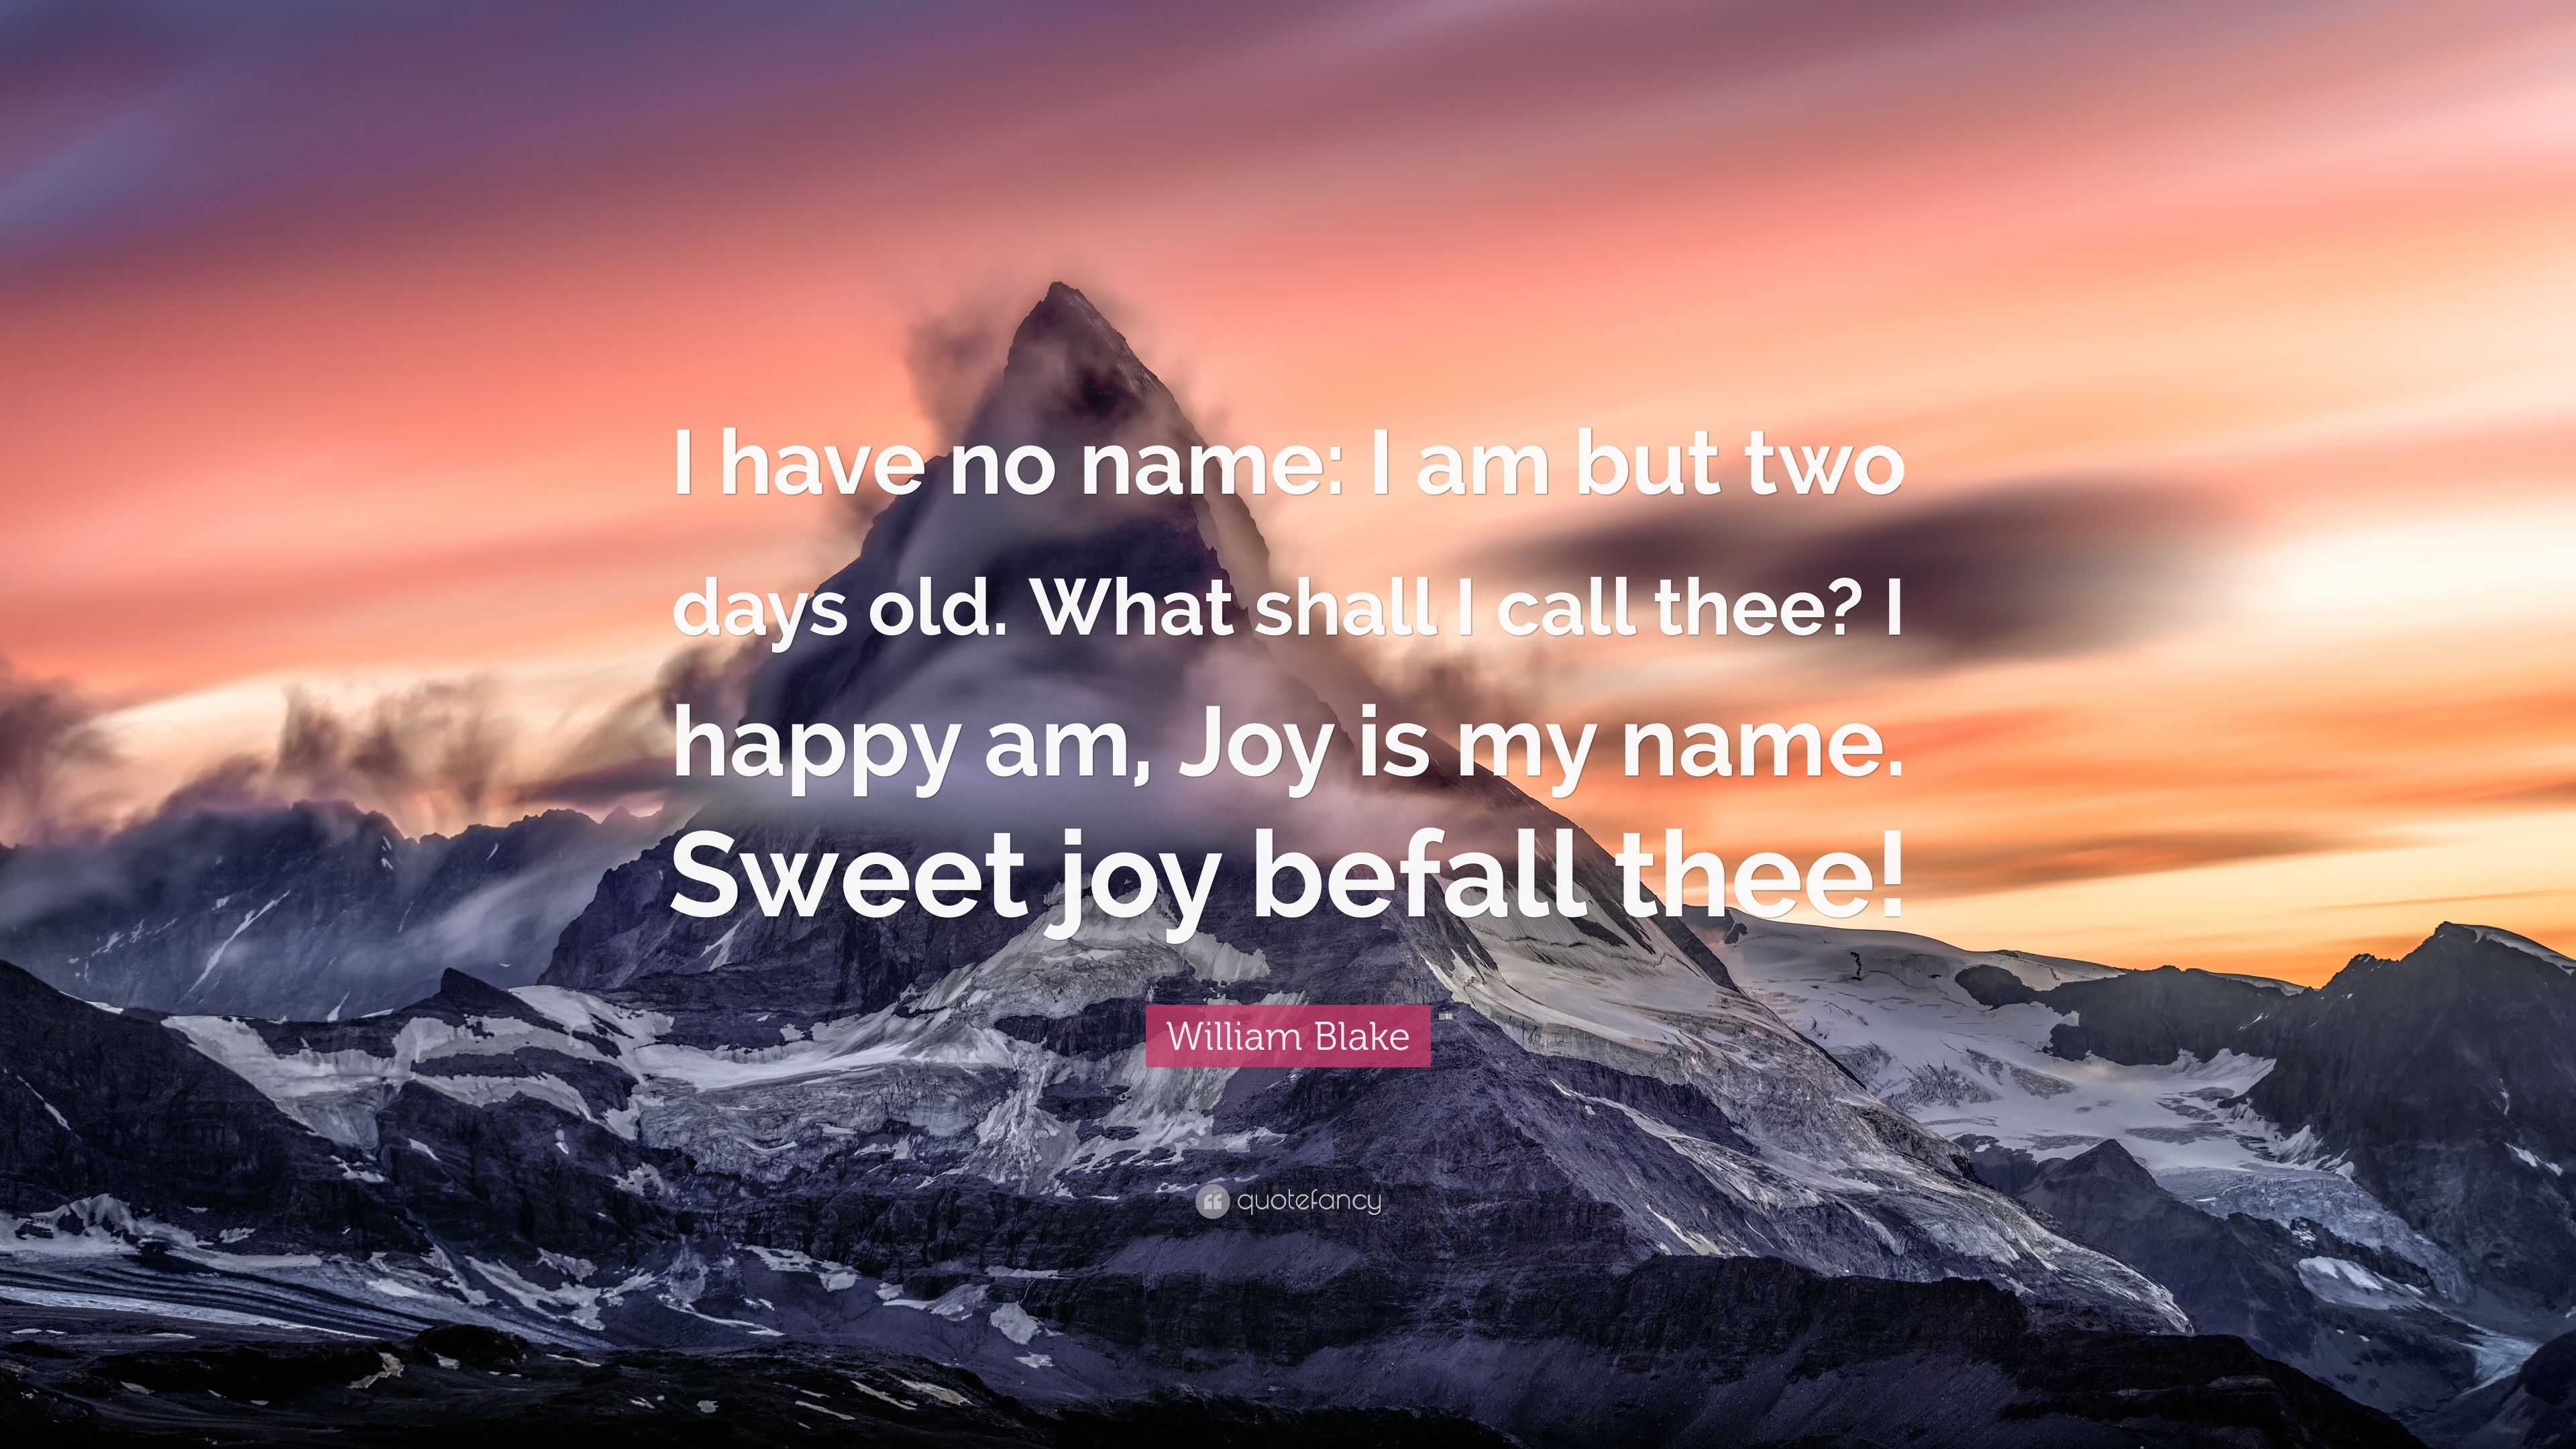 sweet joy befall thee